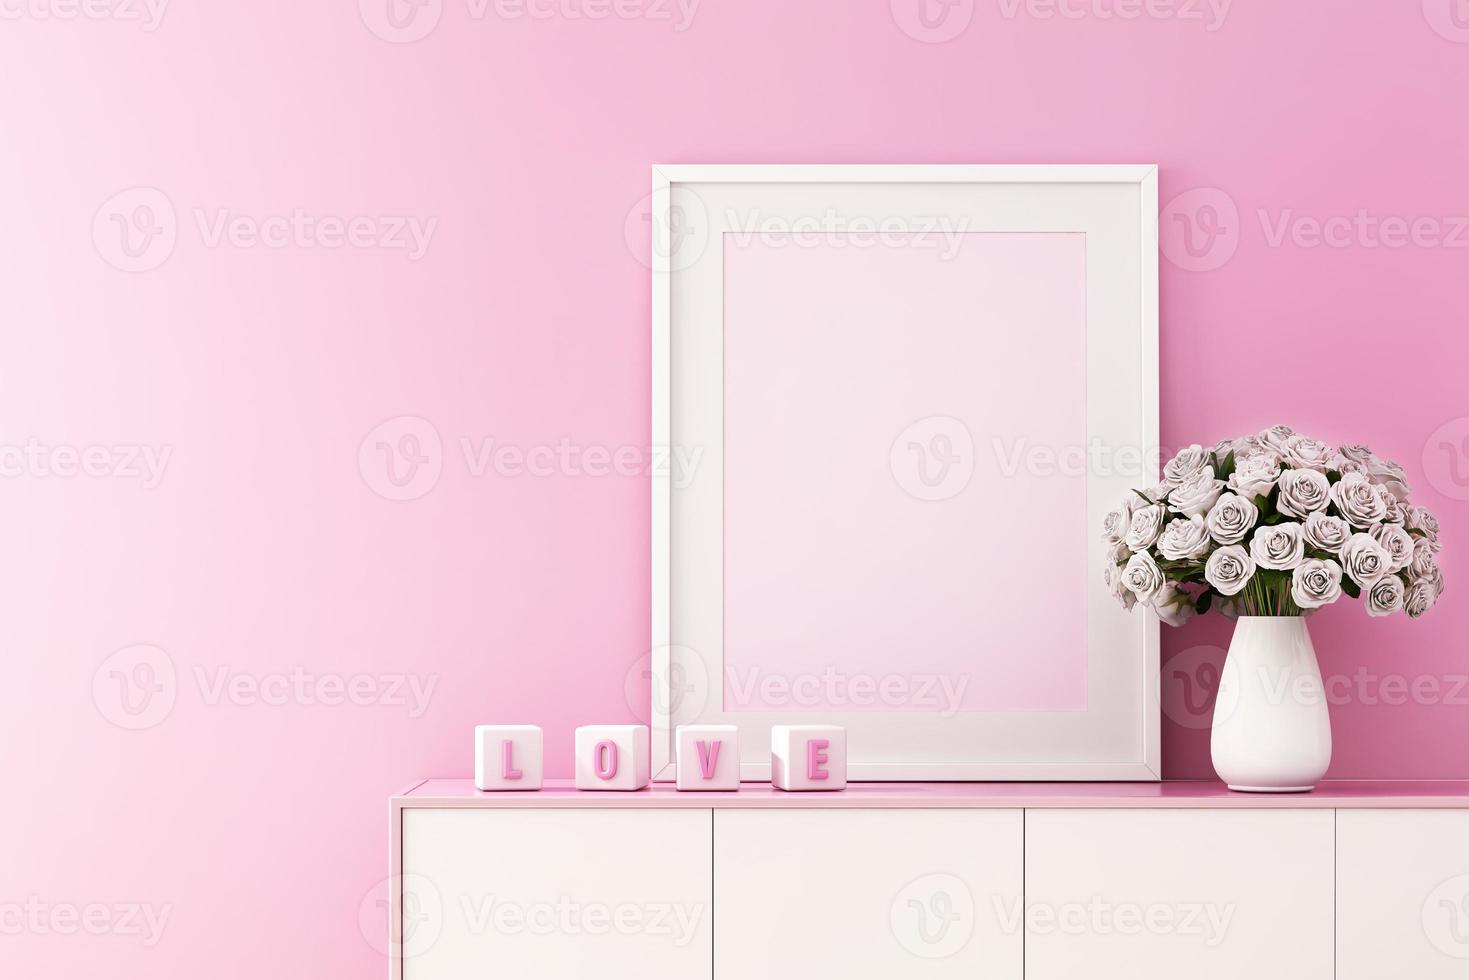 Representación 3D de maqueta de diseño de interiores para sala de estar con marco de imagen en la pared rosa, fondo del día de San Valentín foto